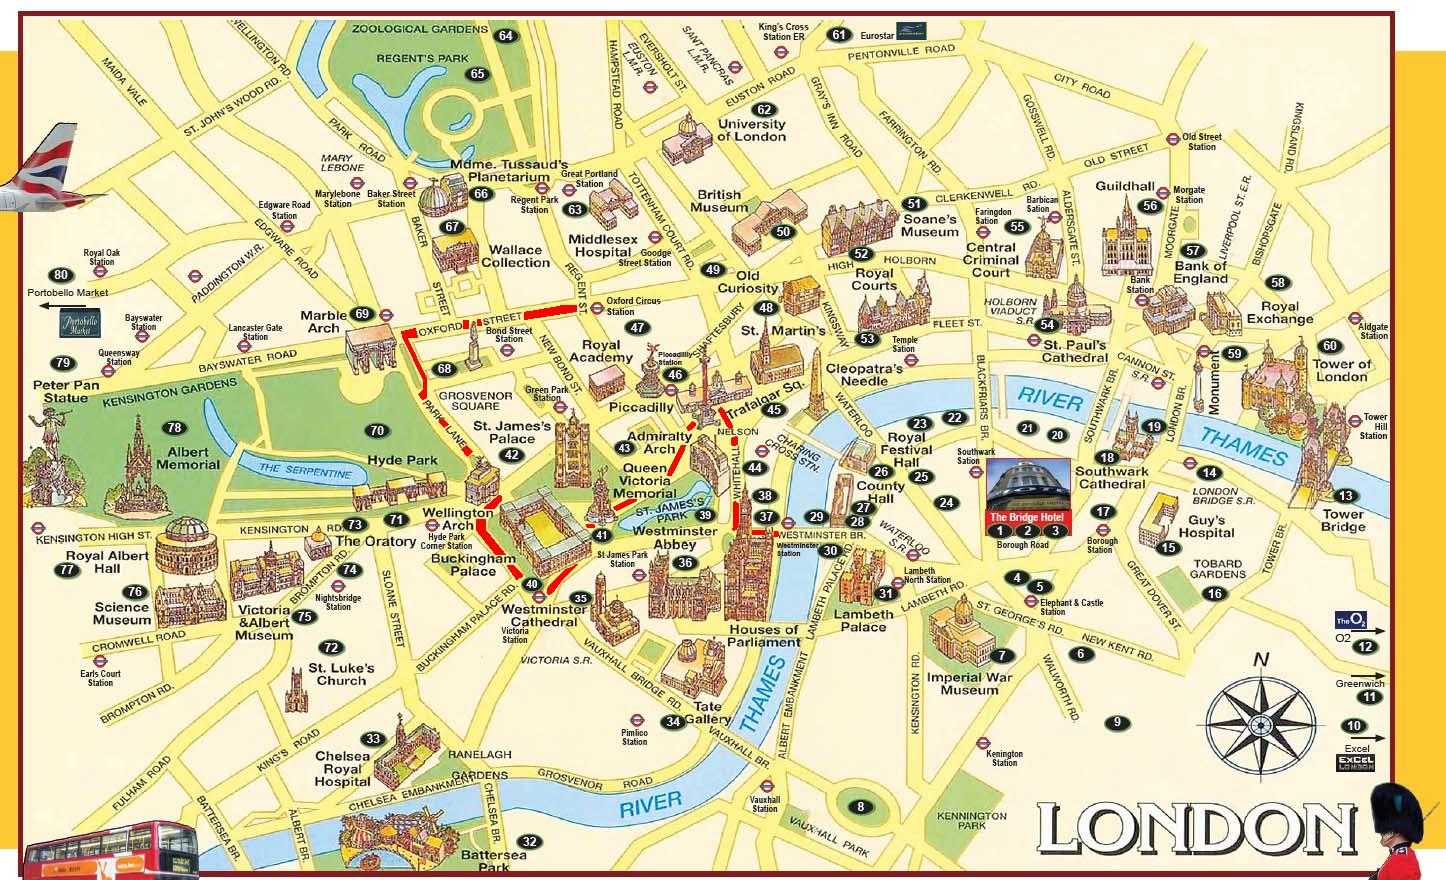 карта лондона на английском языке